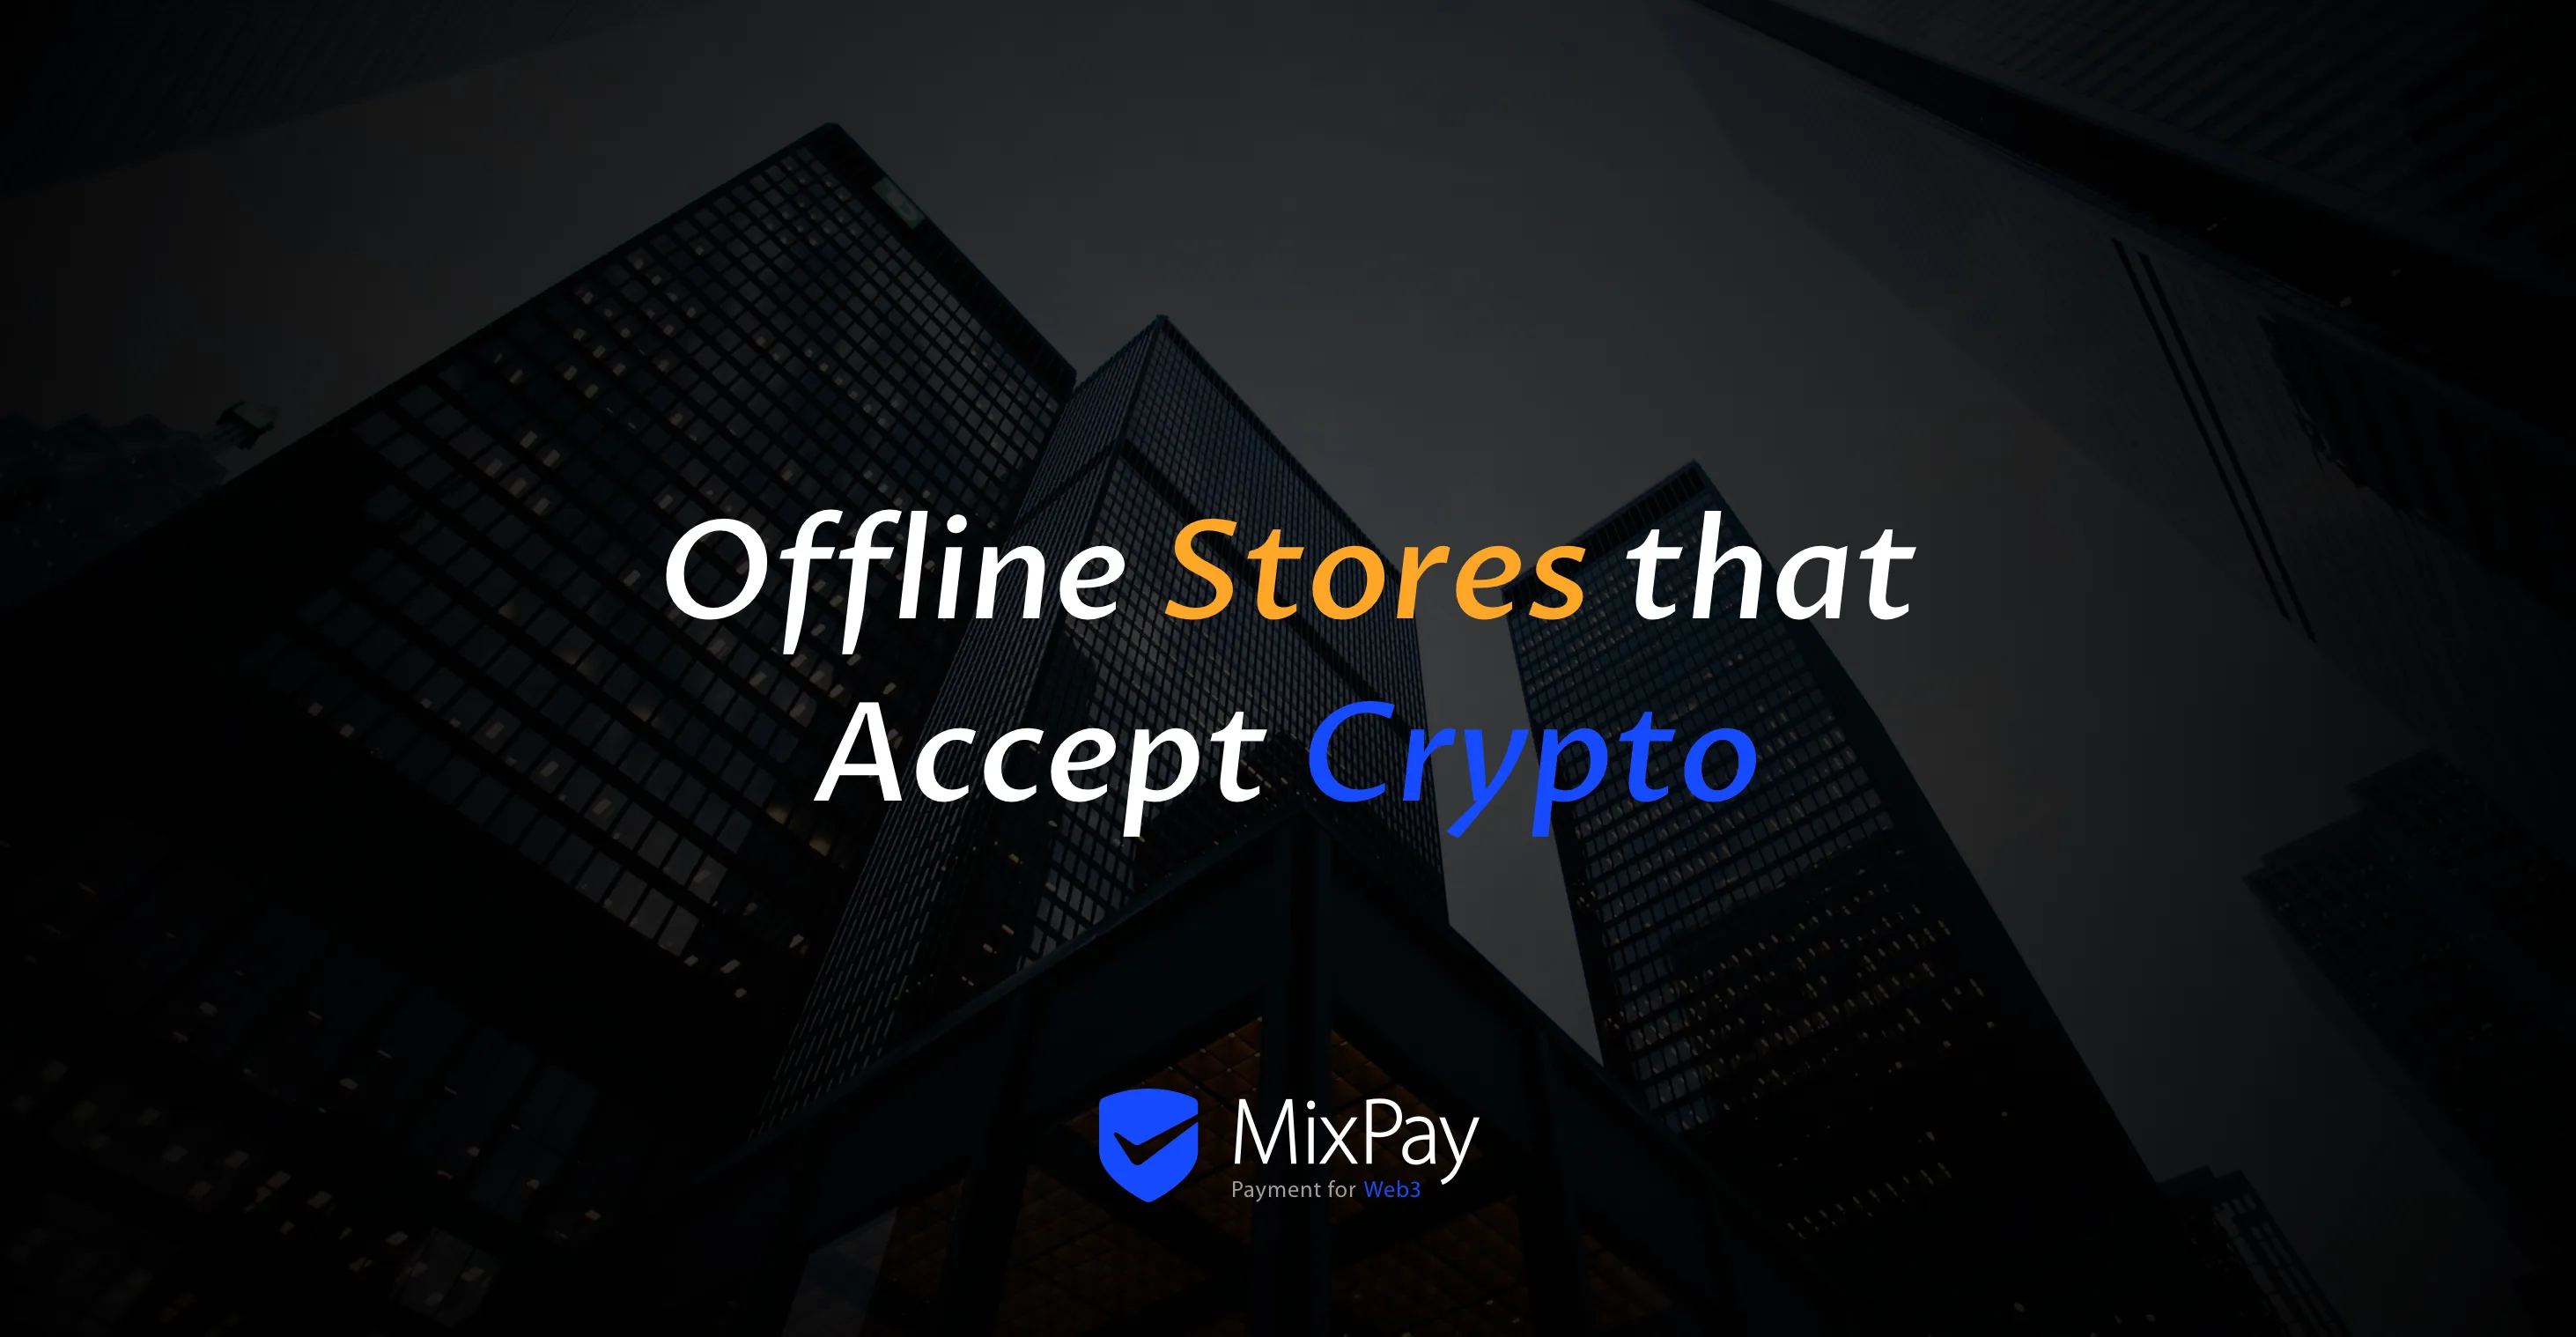 Offline obchody, ktoré akceptujú kryptomenu s MixPay